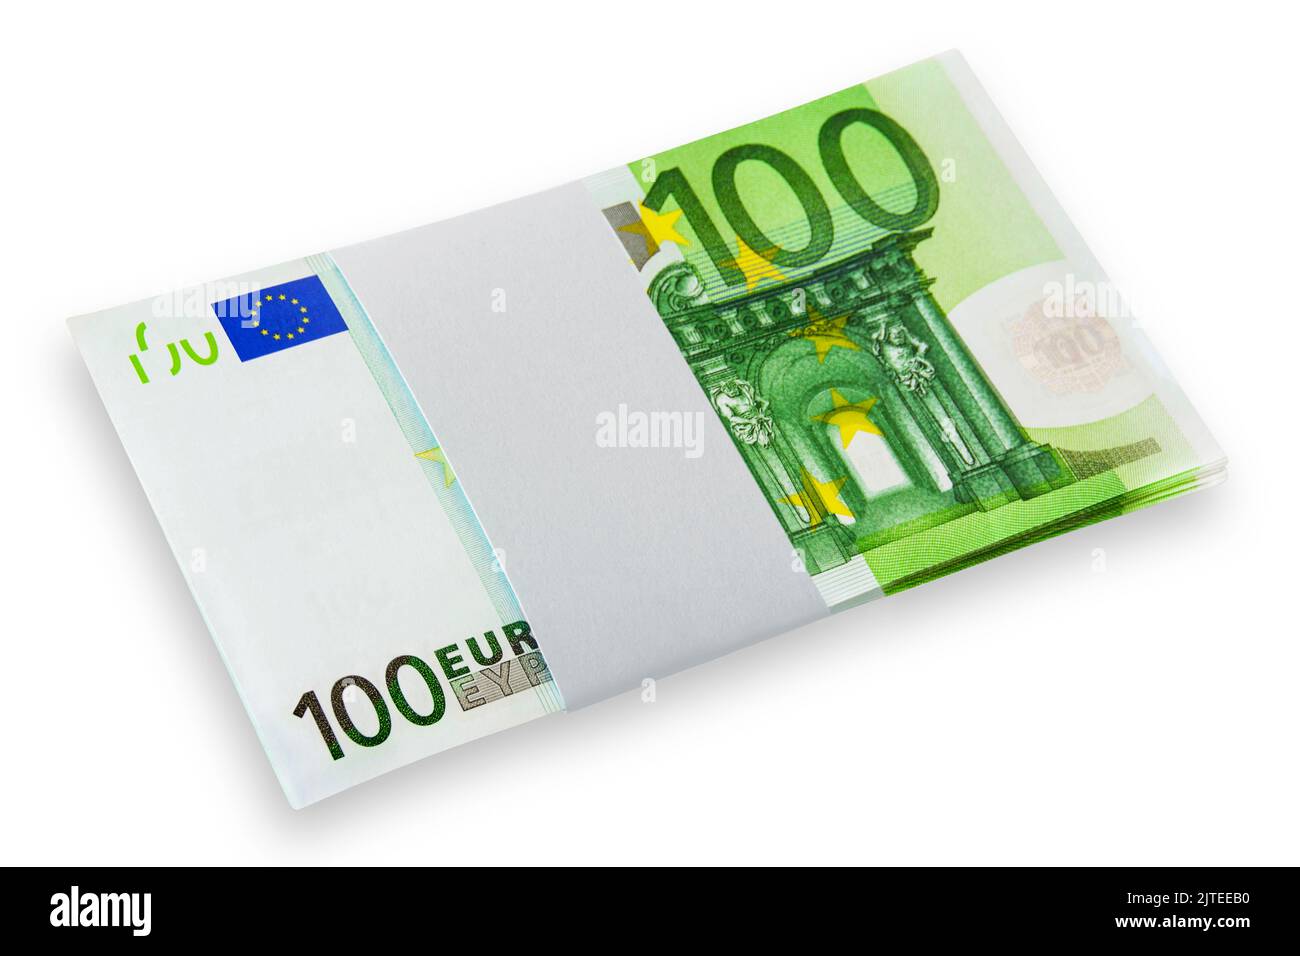 Euro banknotes on white background Stock Photo